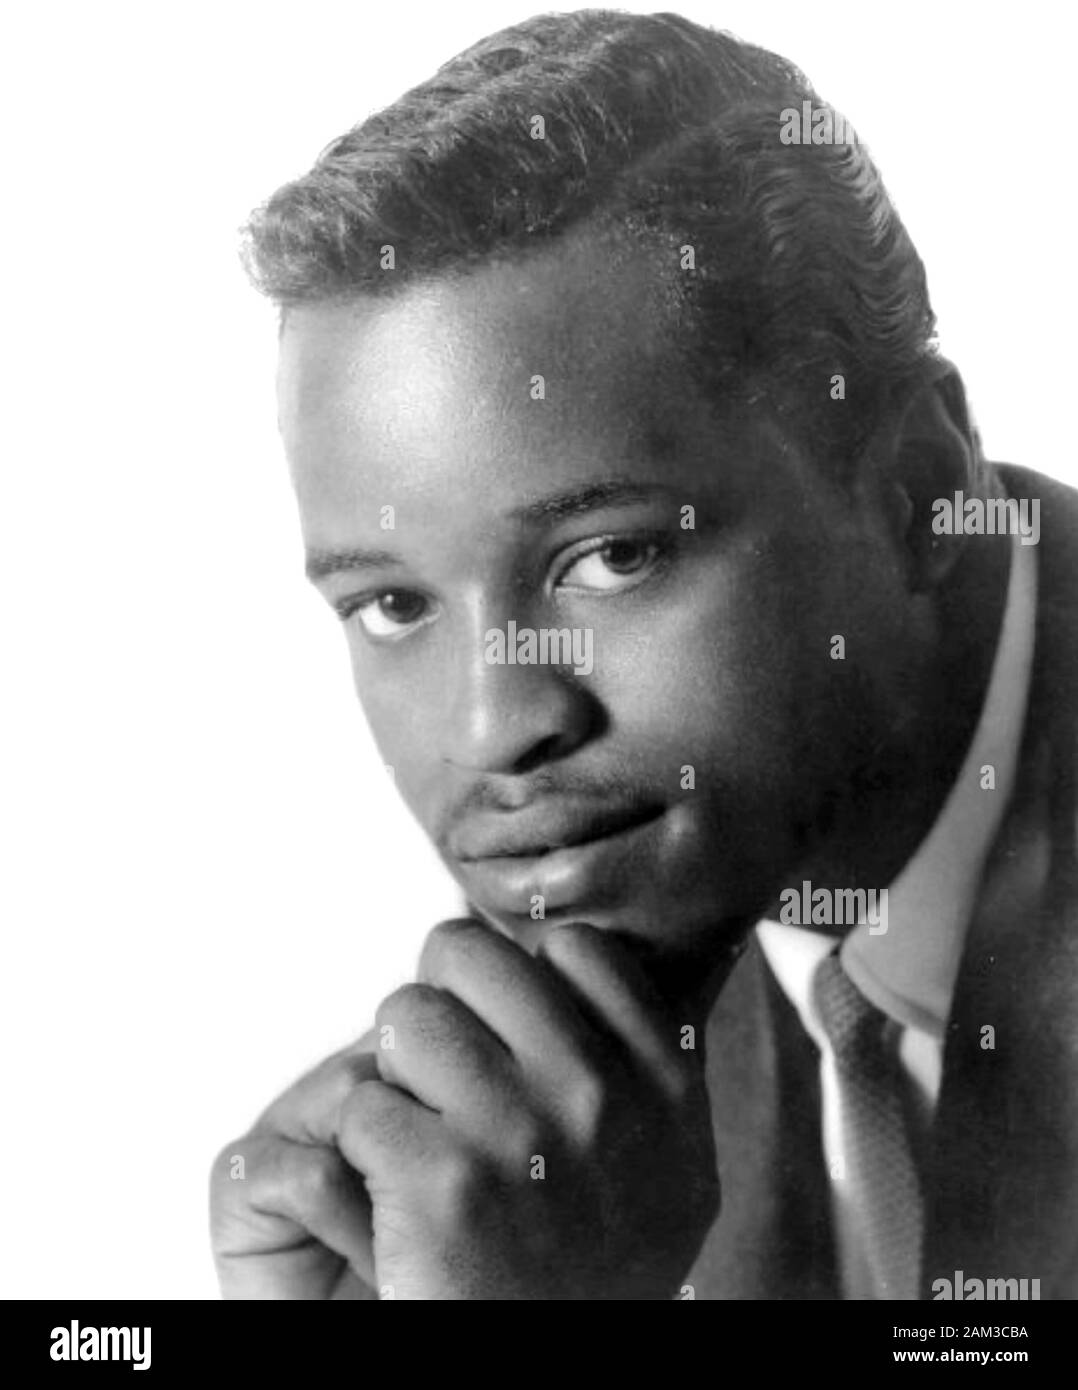 Bobby HENDRICKS Foto promozionale del cantante americano R&B circa 1958 Foto Stock